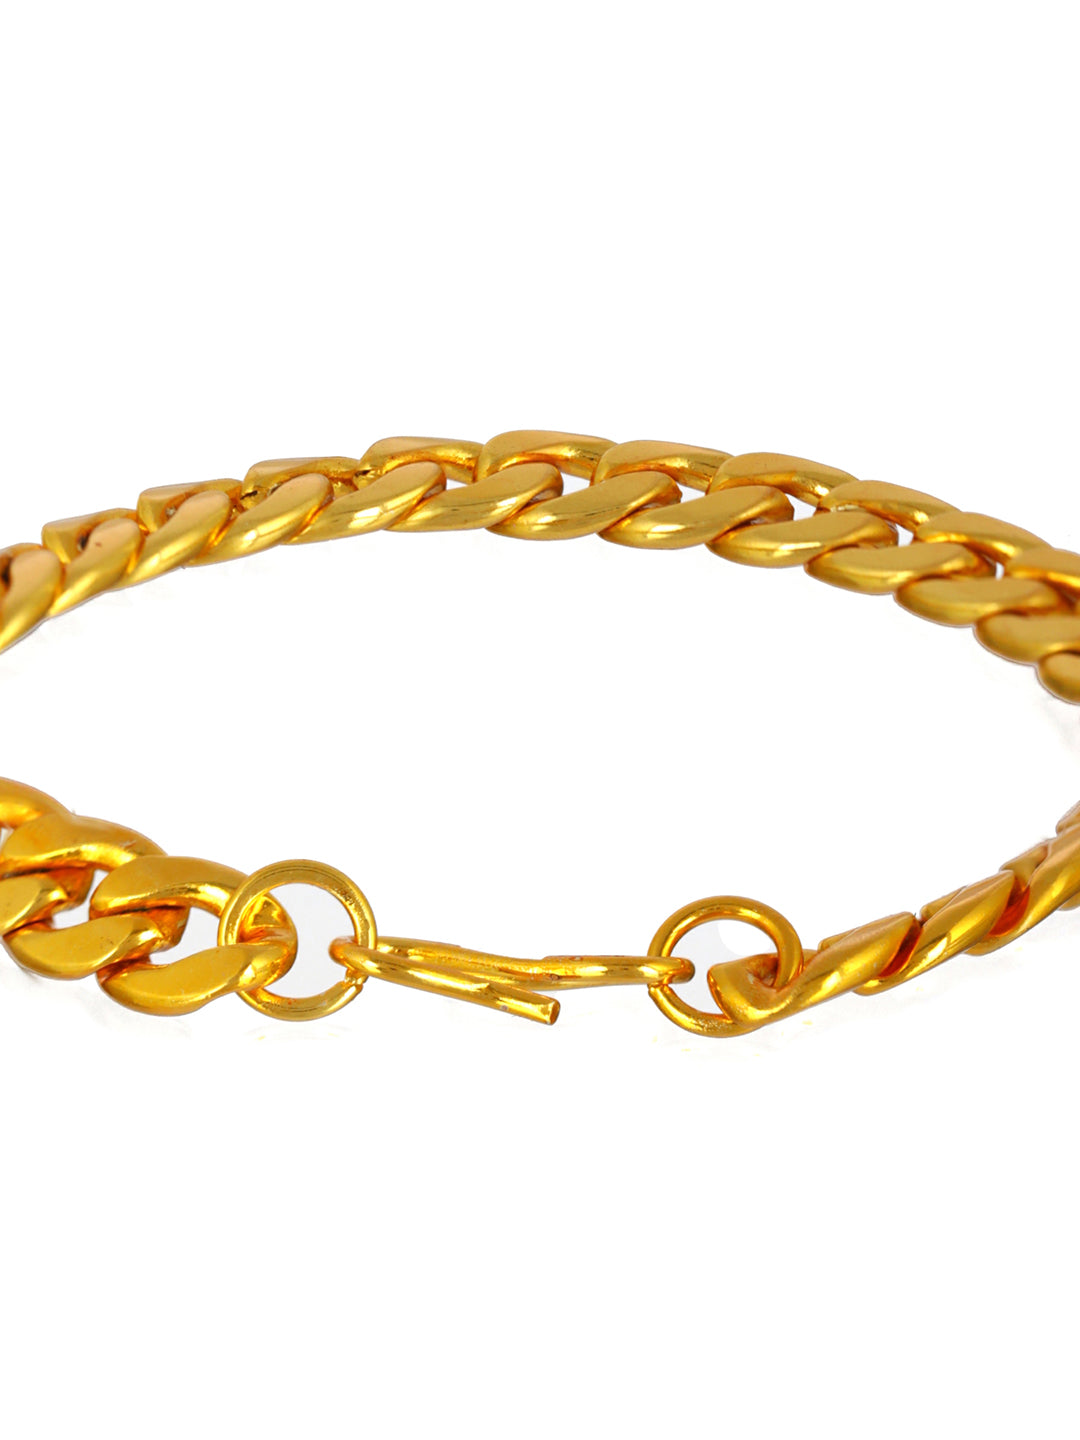 Customised 22K Gold Bracelet